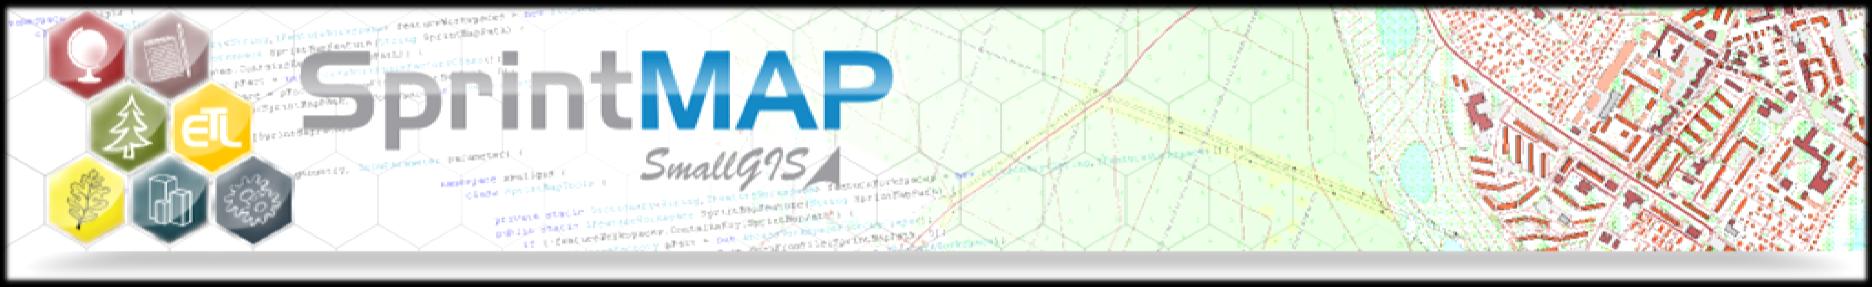 DZIAŁALNOŚĆ W OBSZARZE GIS Produkcja specjalistycznego oprogramowania GIS opartego głównie o technologię ESRI, rozwijanego pod marką SprintMAP.